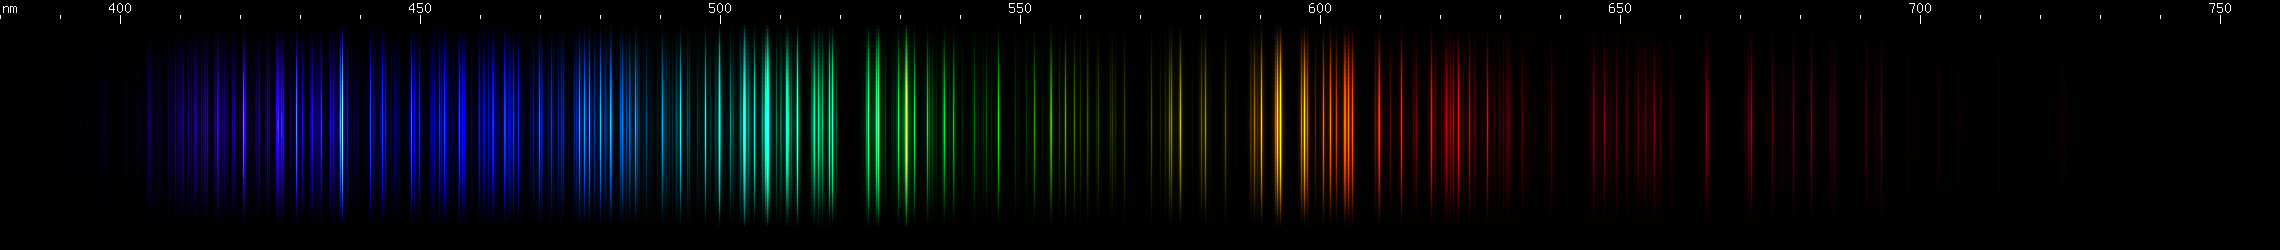 Spectral Lines of Hafnium